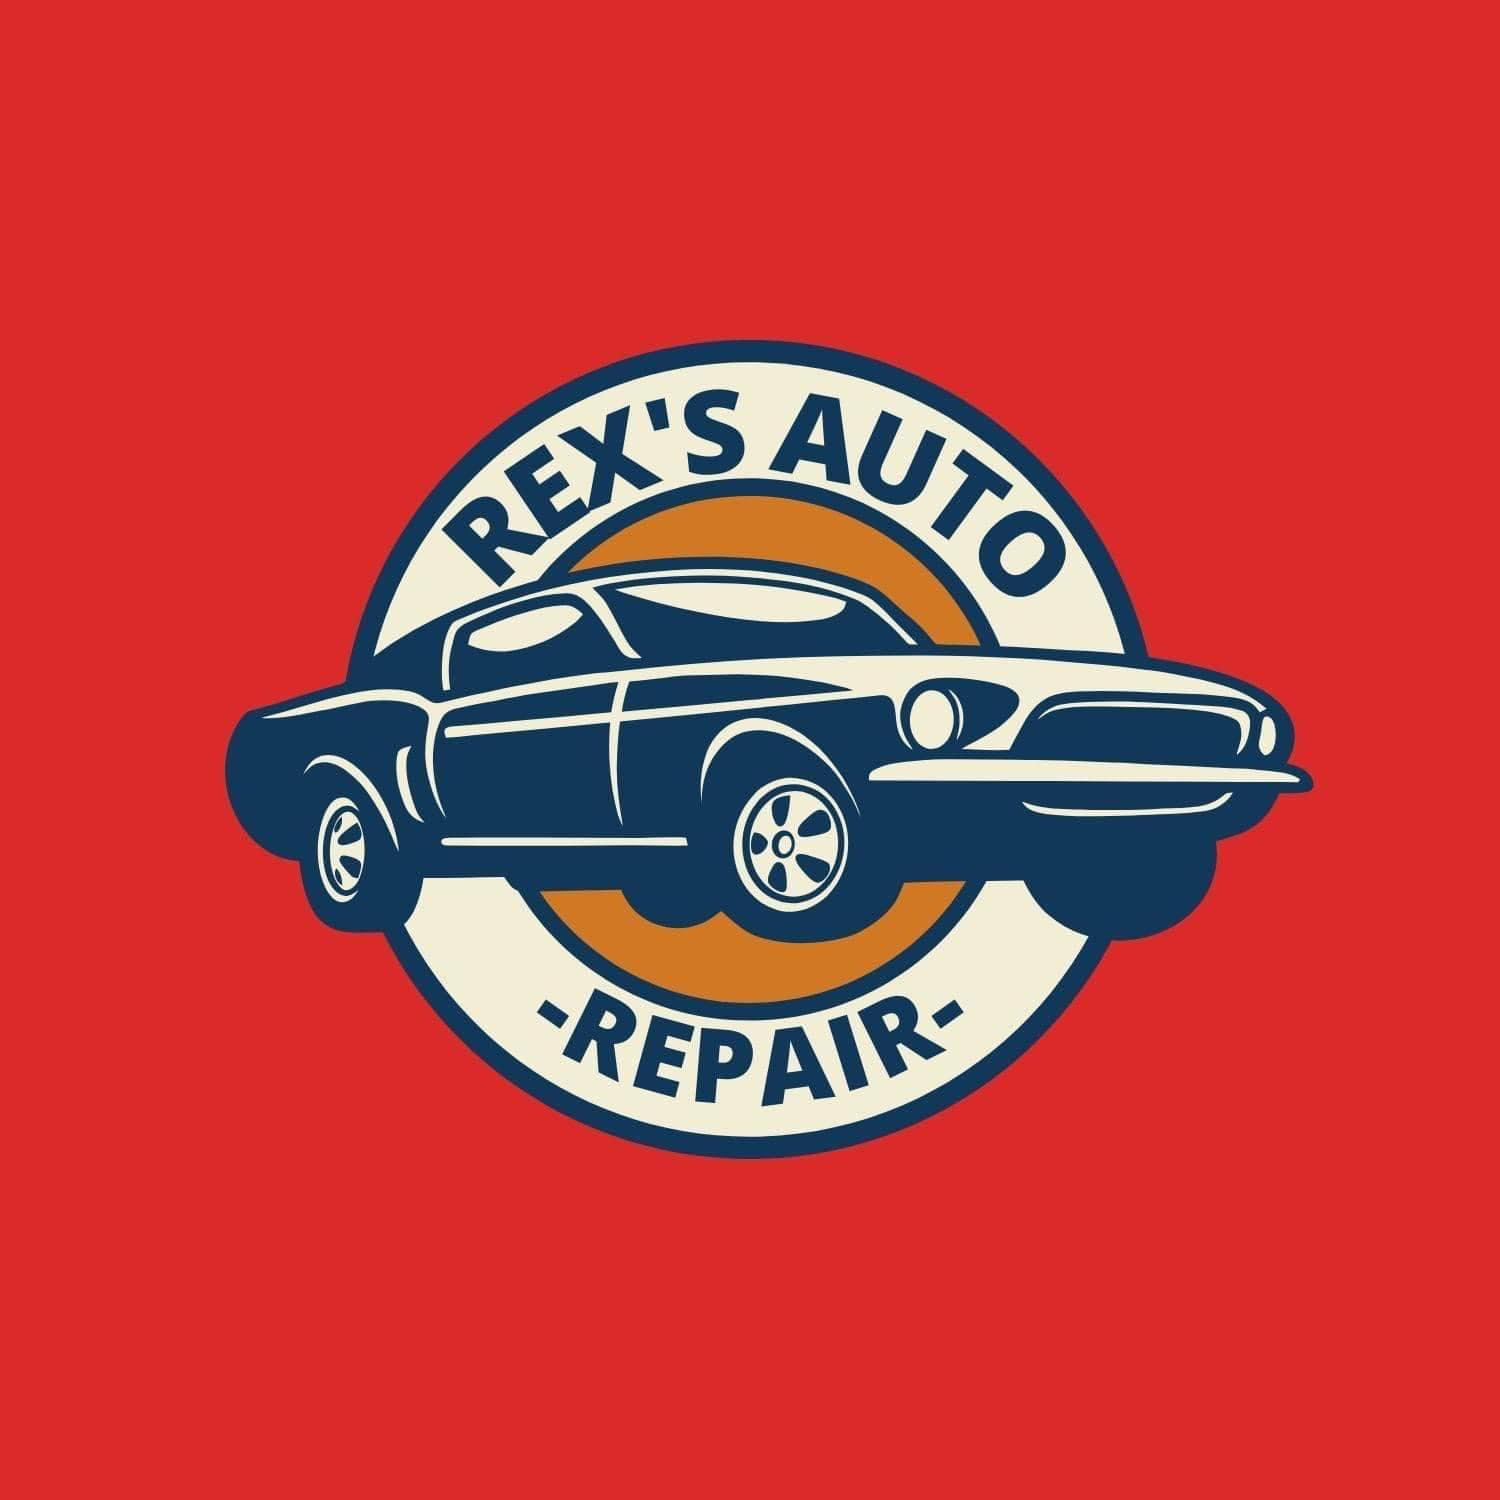 REX'S AUTO REPAIRS logo